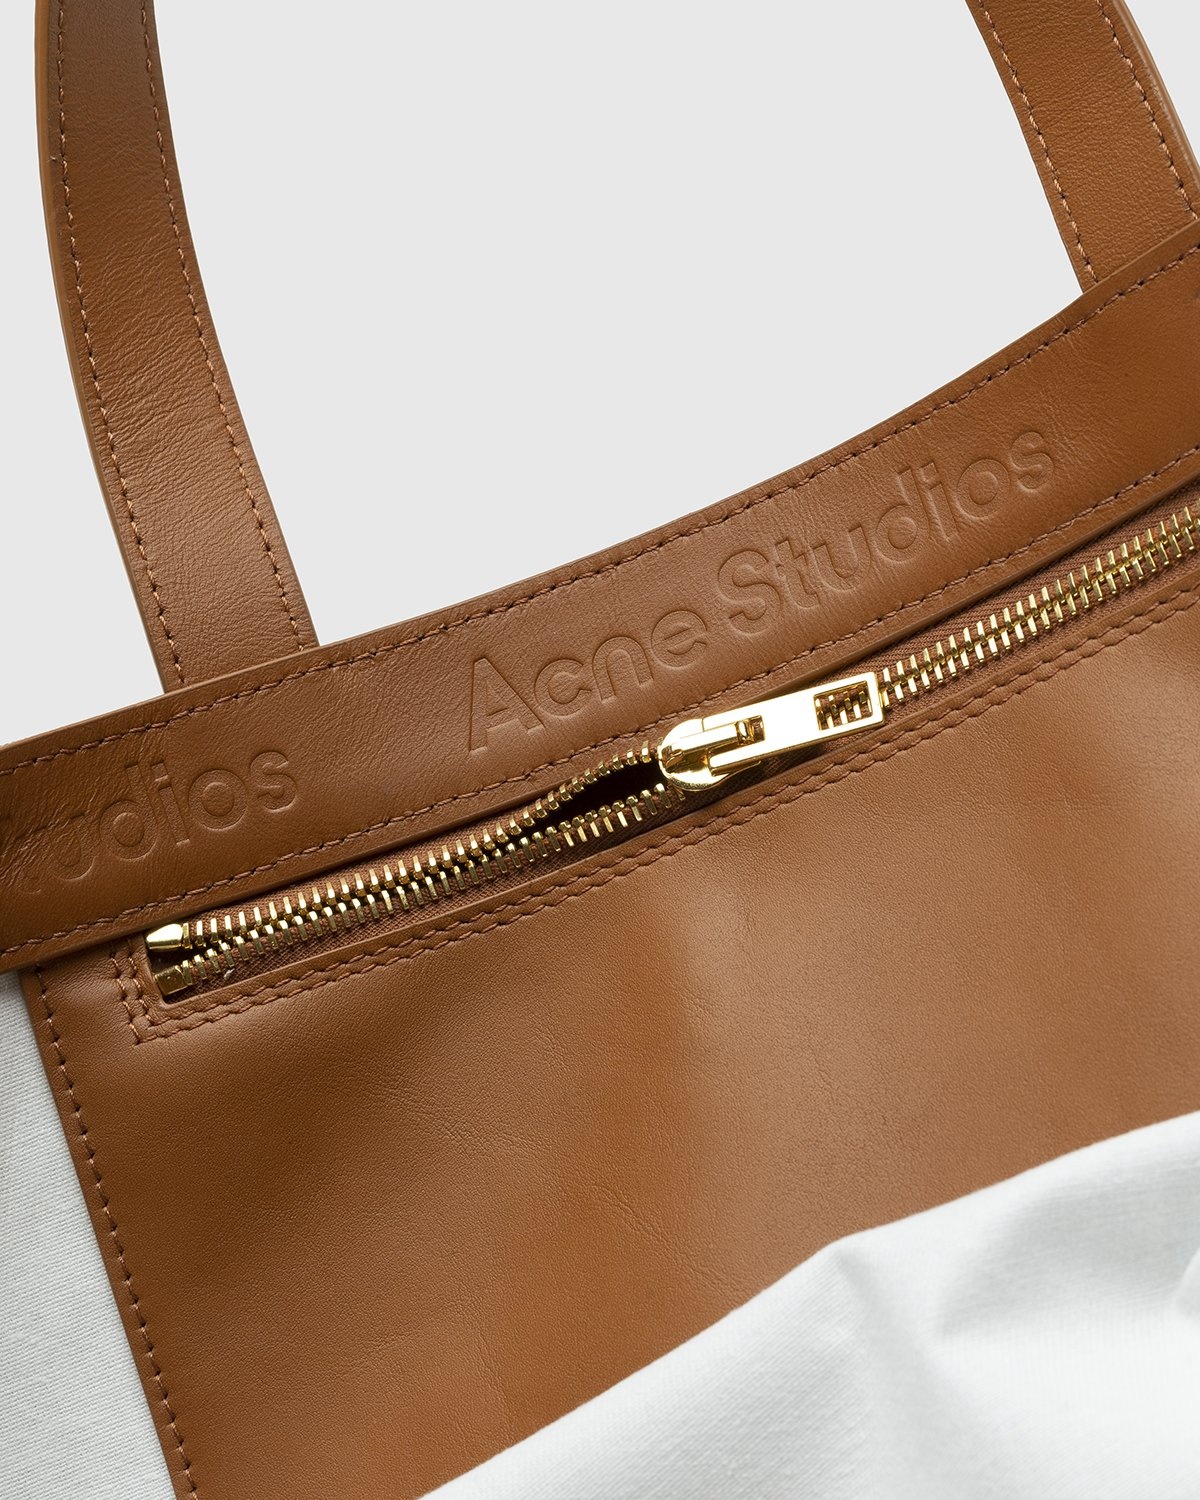 Acne Studios – Shiny Tote Bag Brown - Tote Bags - Brown - Image 3